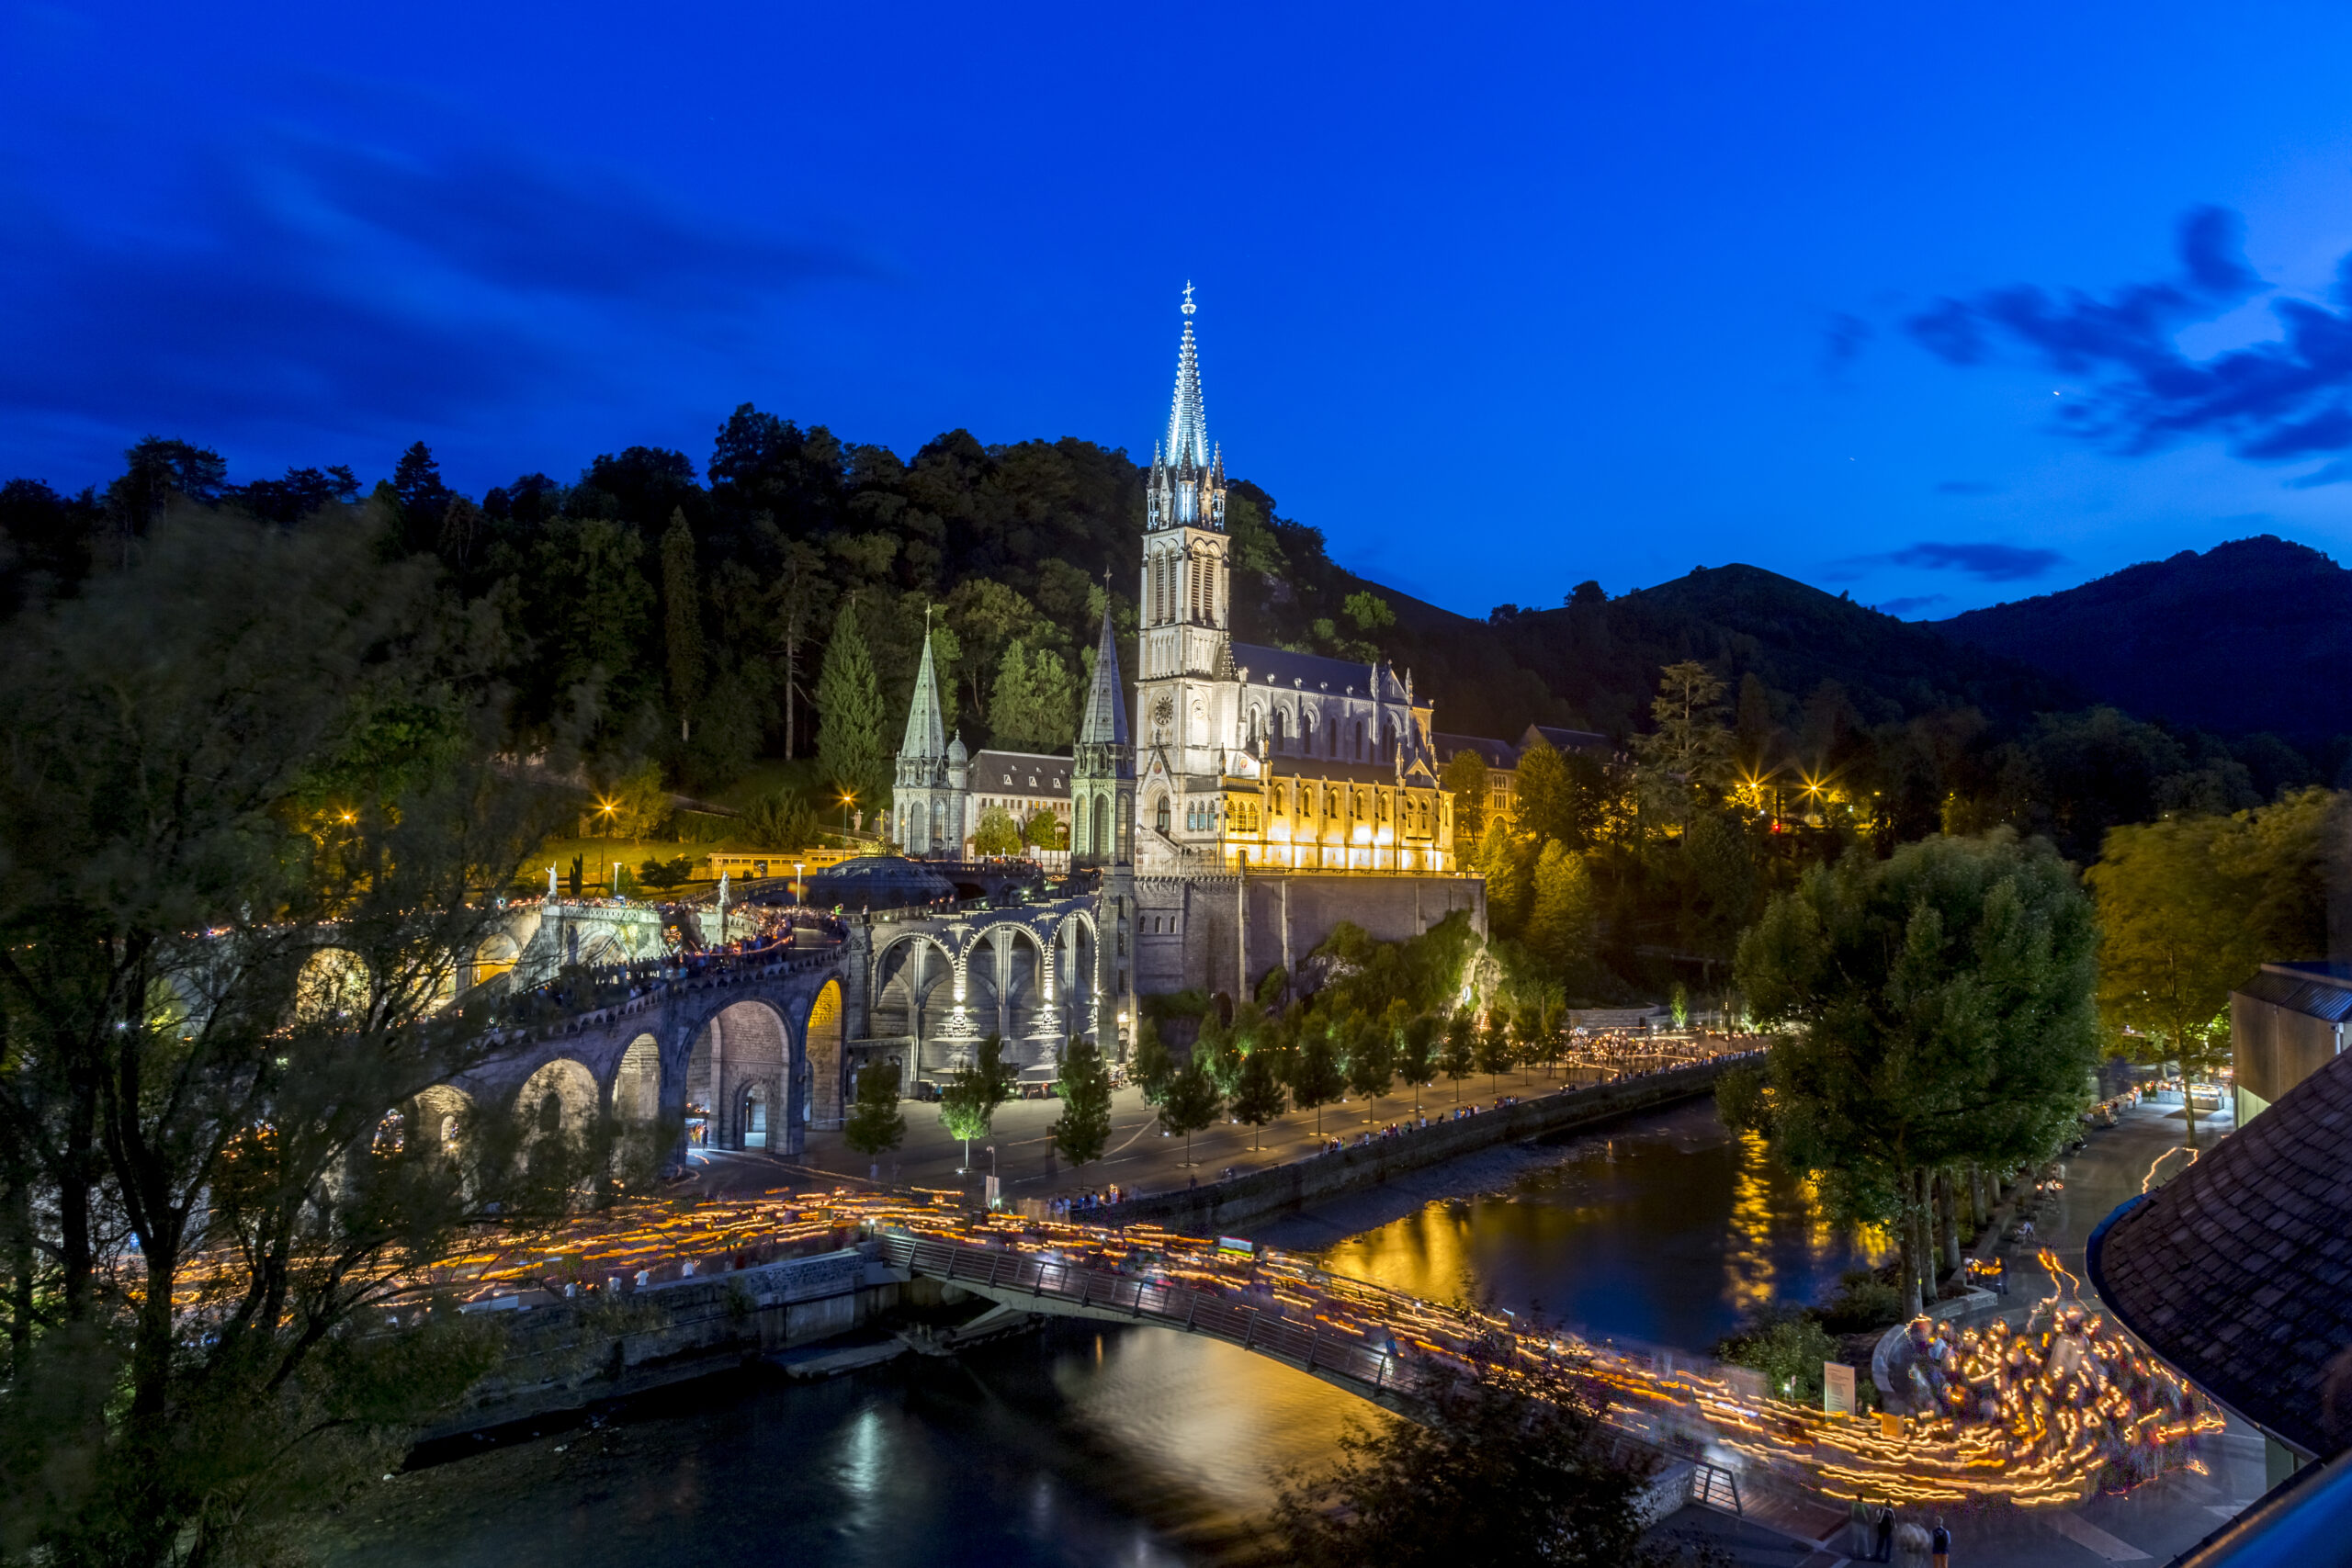 Torchlight procession - Sanctuaire Notre-Dame de Lourdes